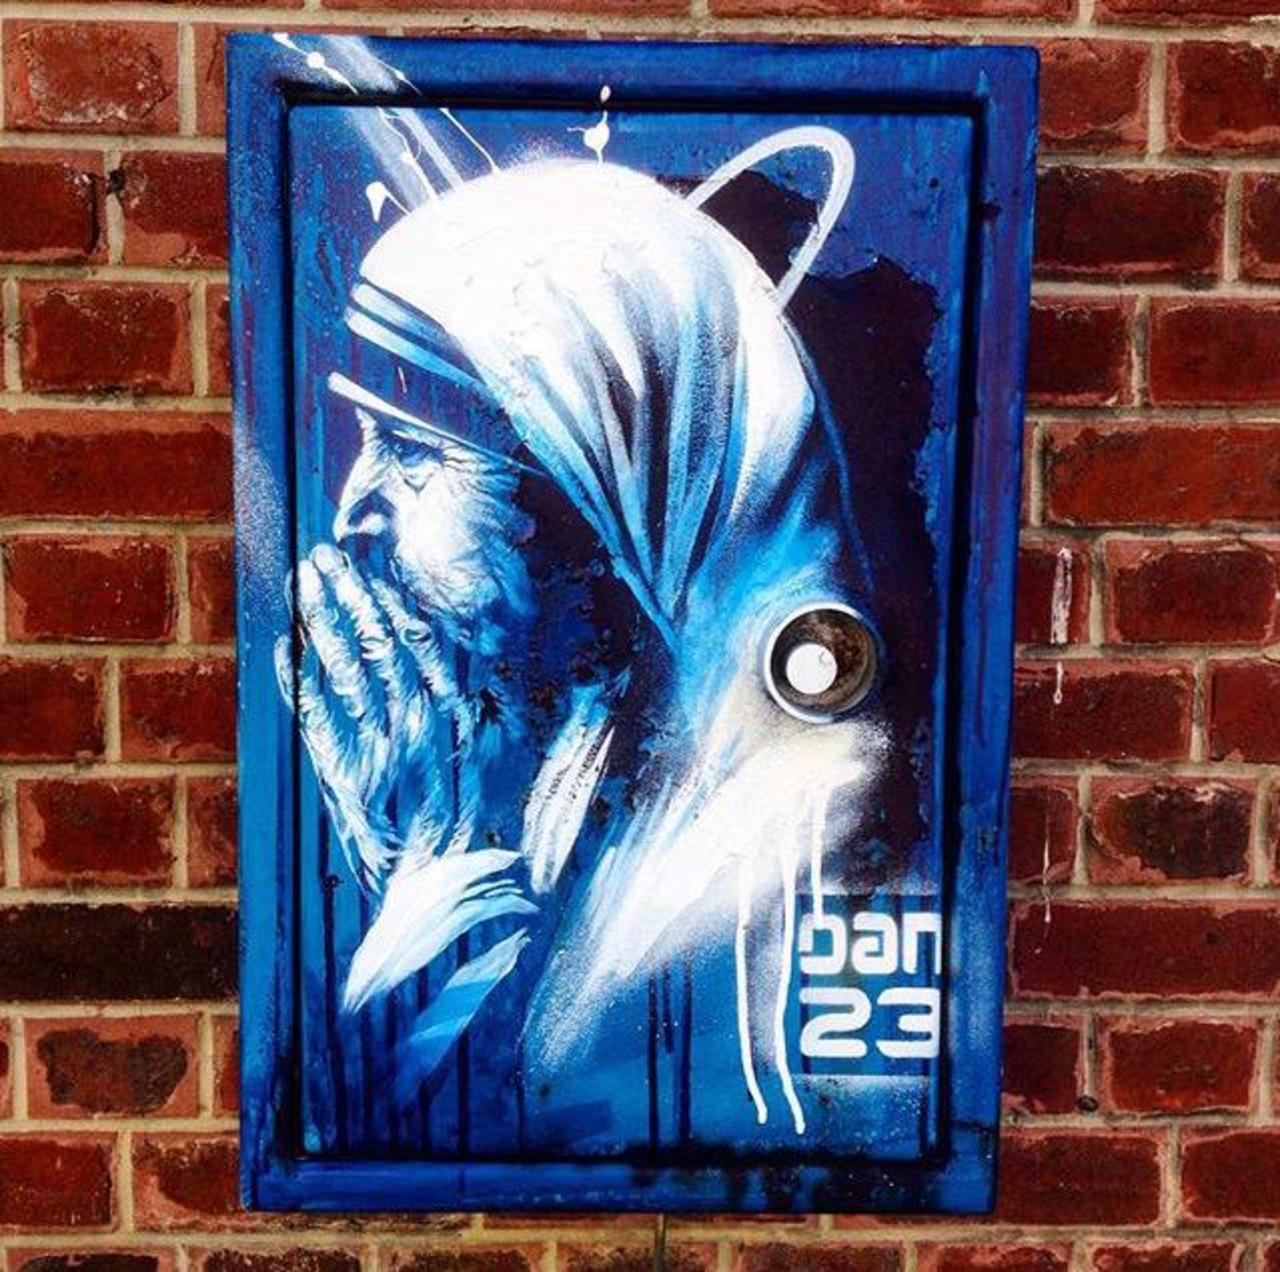 New Street Art 'Détail Spirit' by Dan23 

#art #graffiti #mural #streetart http://t.co/coMOCrnVDn